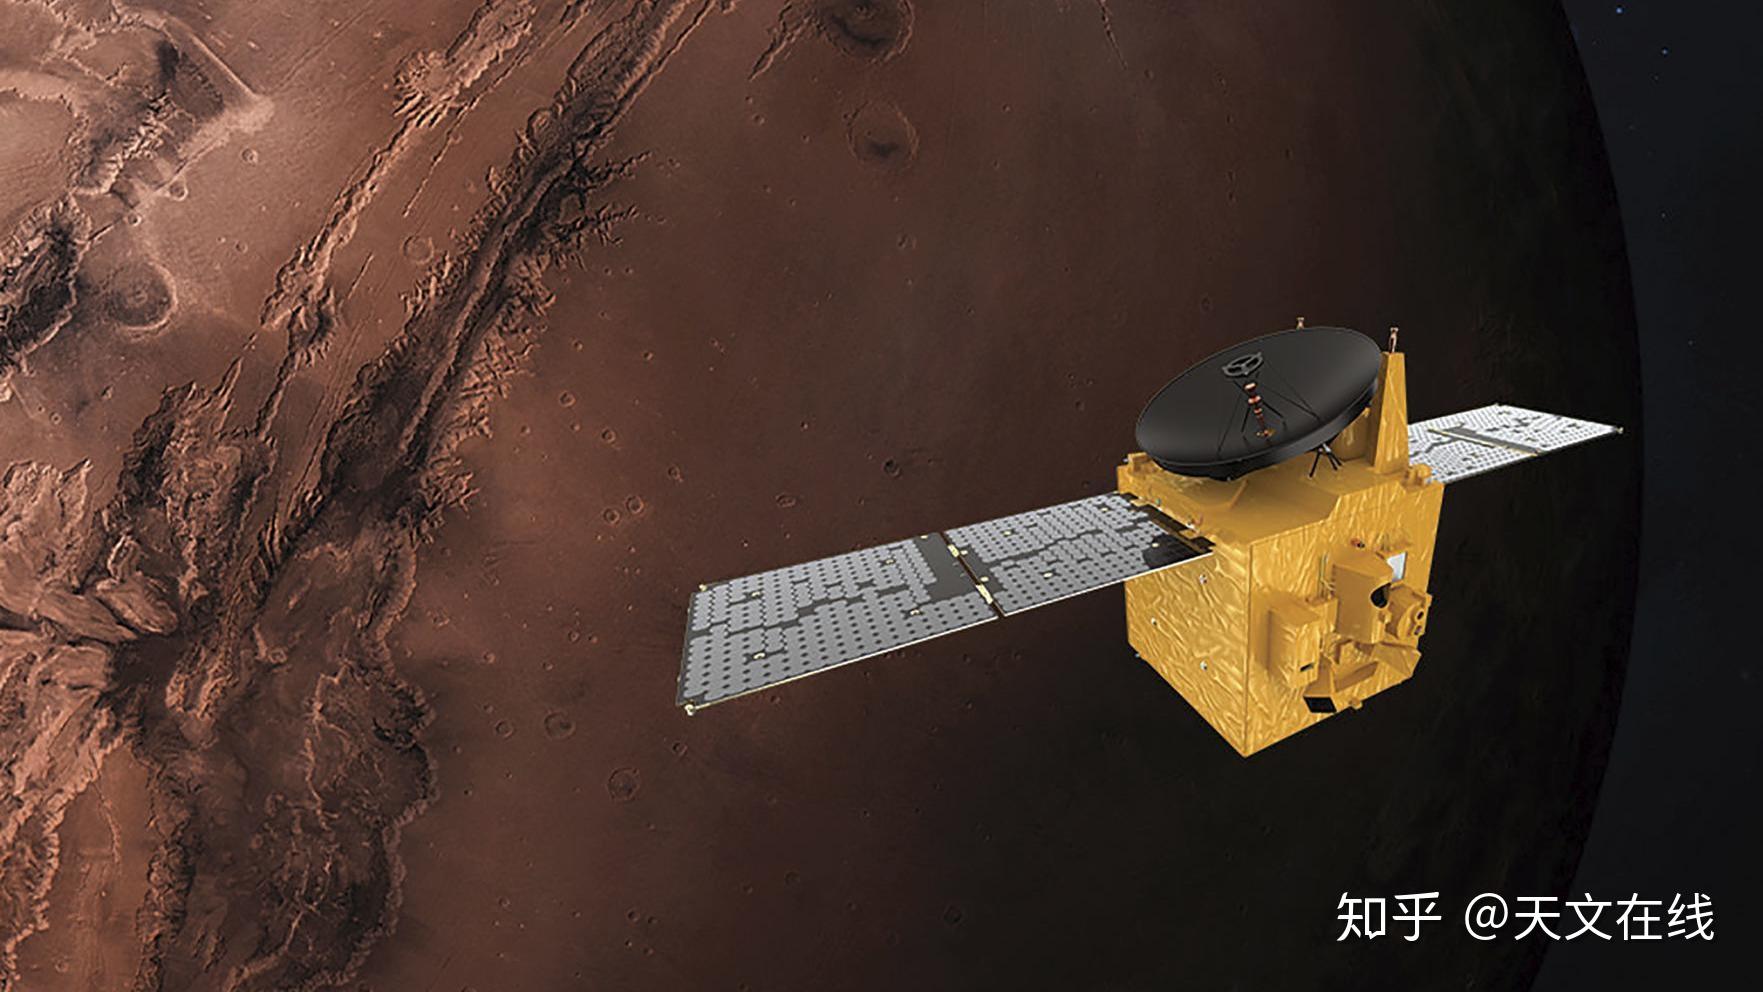 中国首个火星探测器天问一号将在本周发射今已公布探测计划